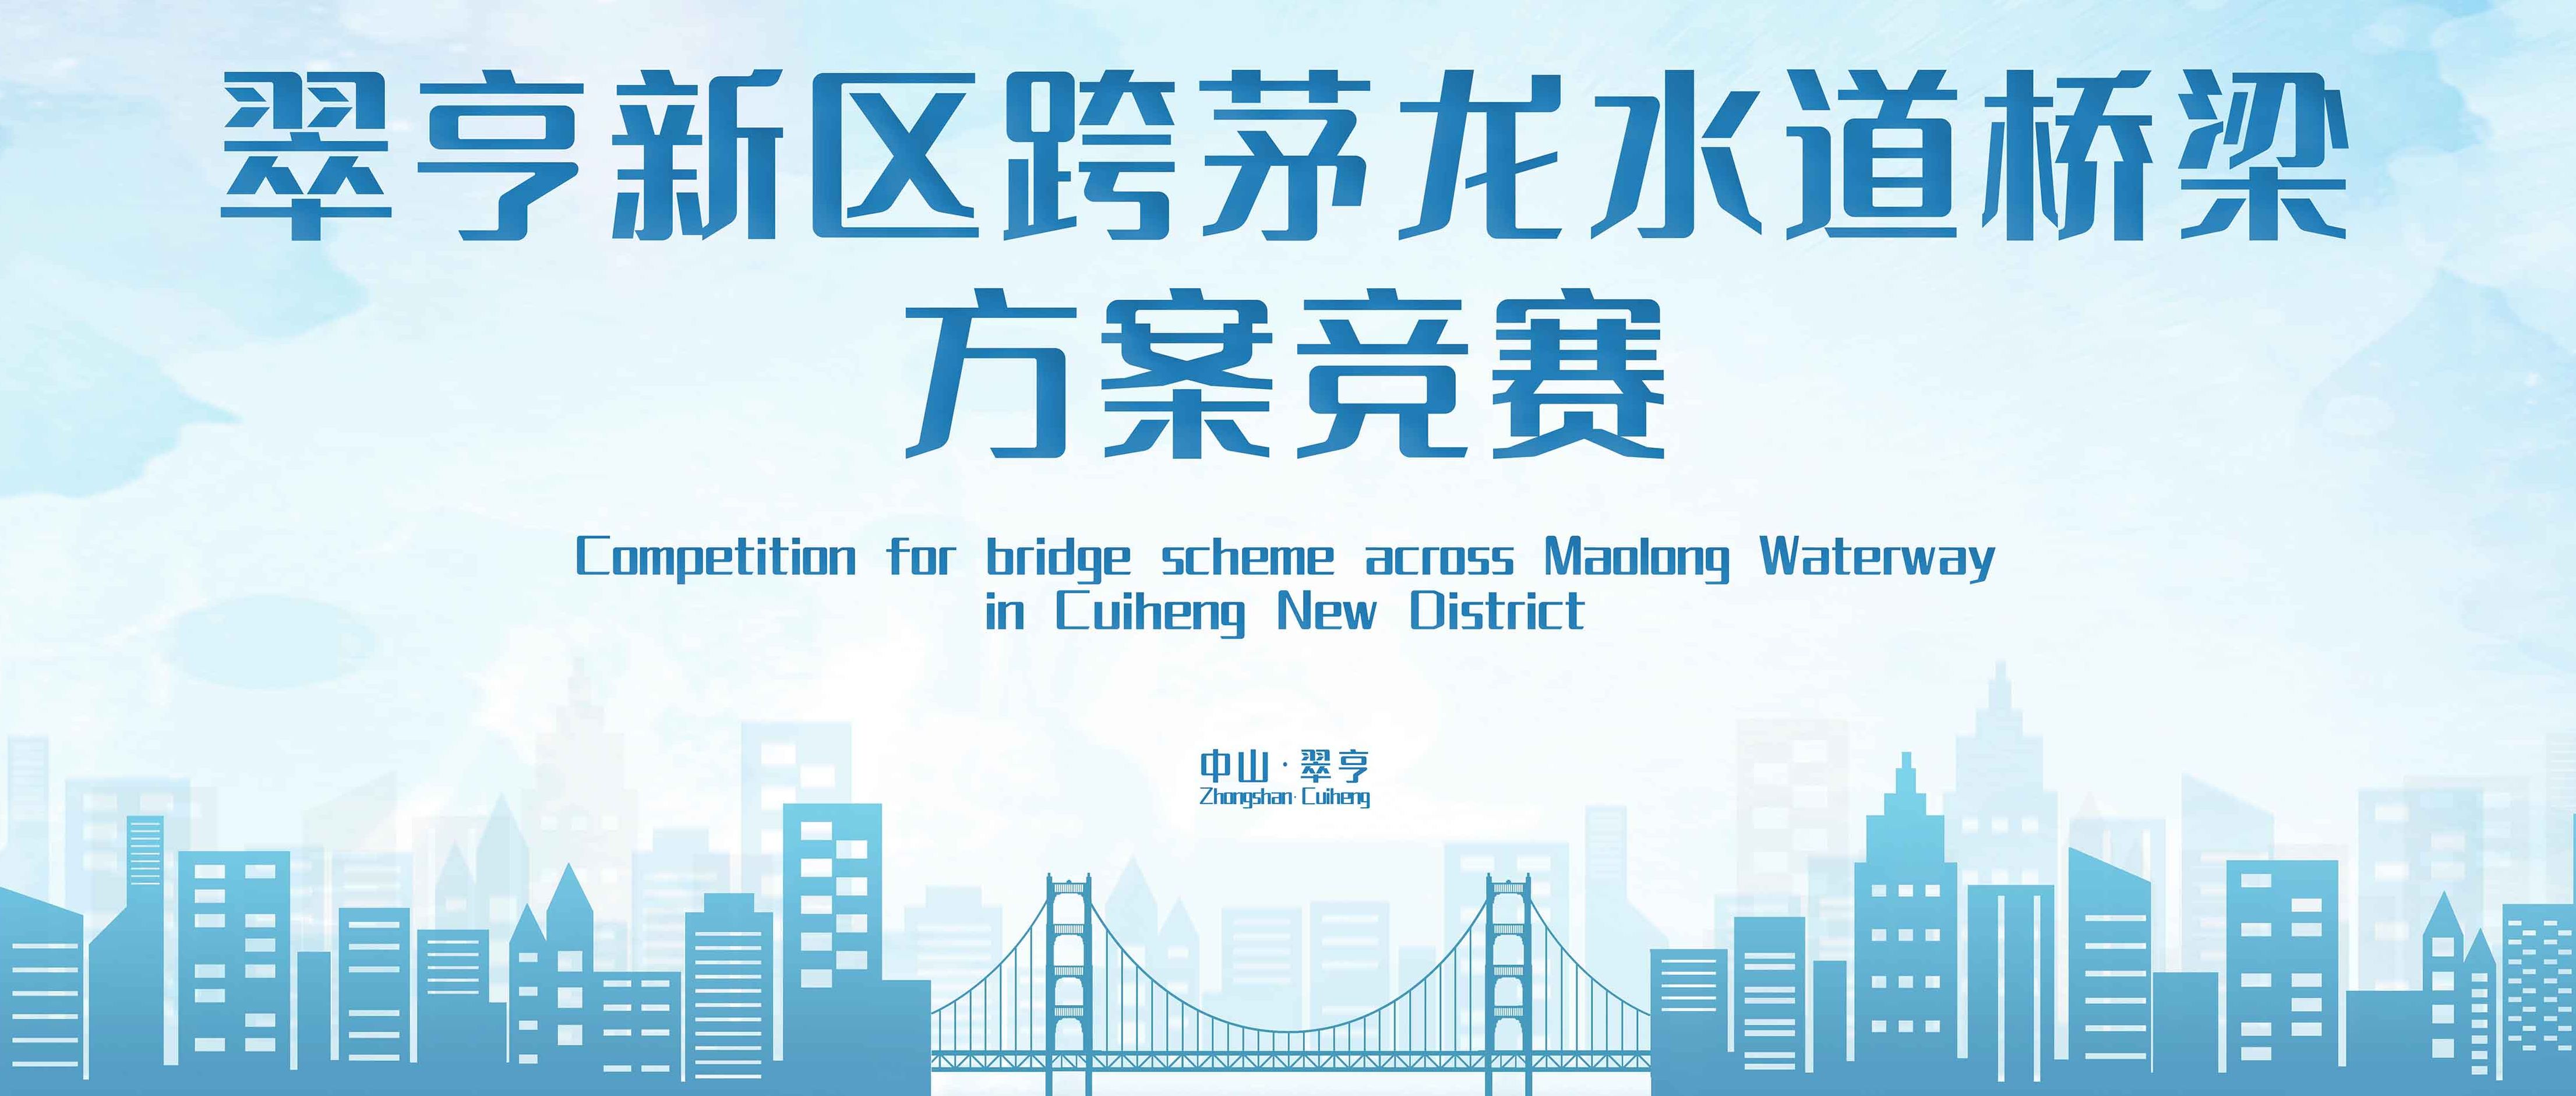 翠亨新区跨茅龙水道桥梁方案竞赛